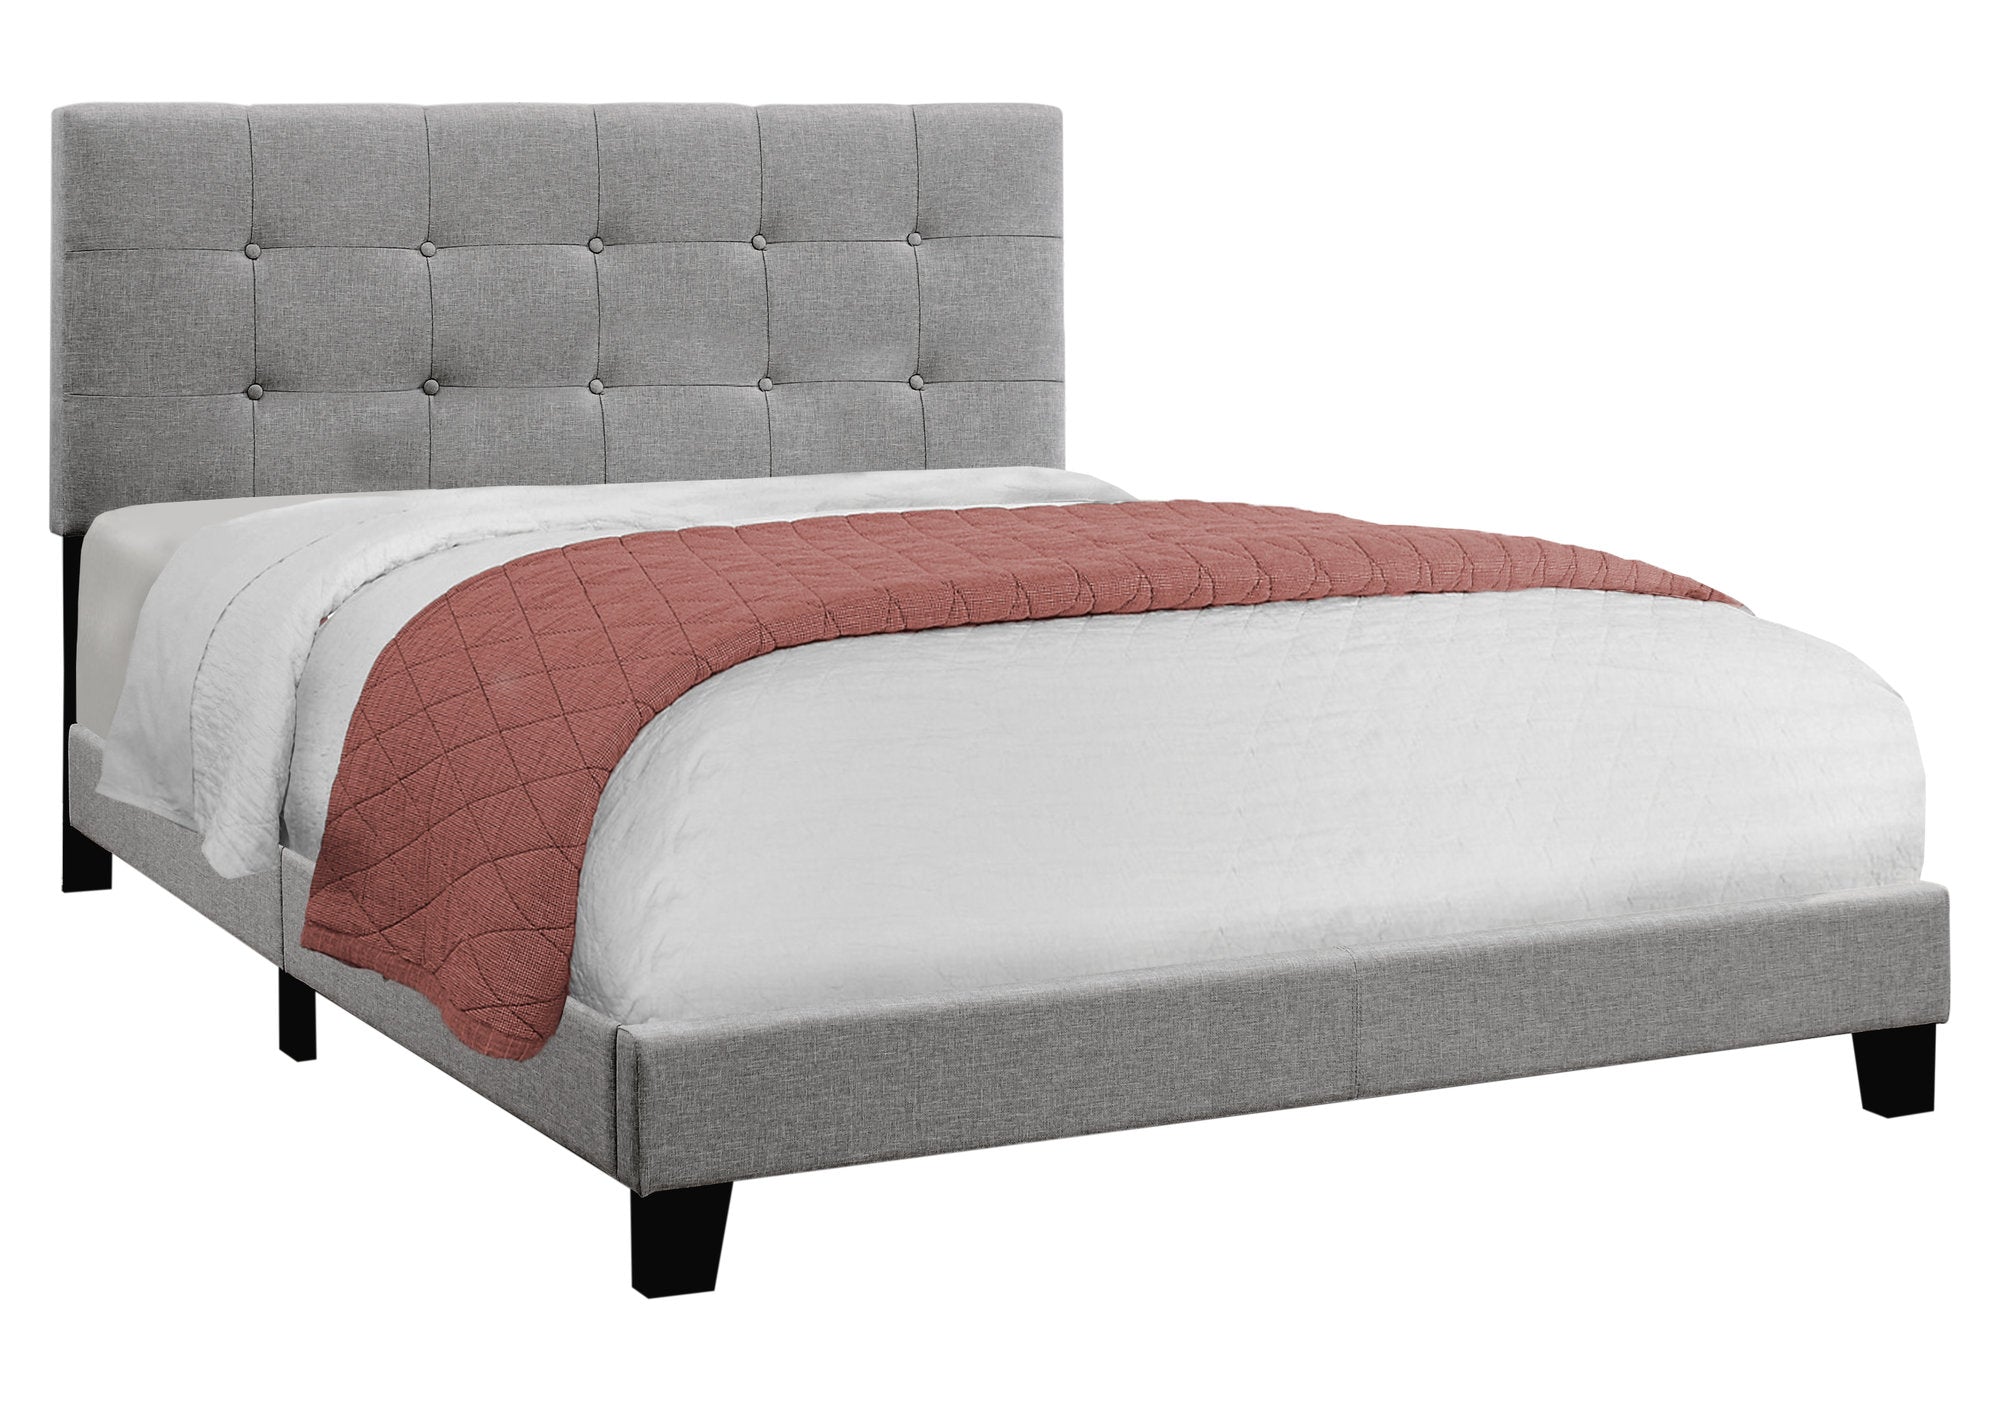 64.25" X 85.25" X 45" Grey Linen - Queen Size Bed